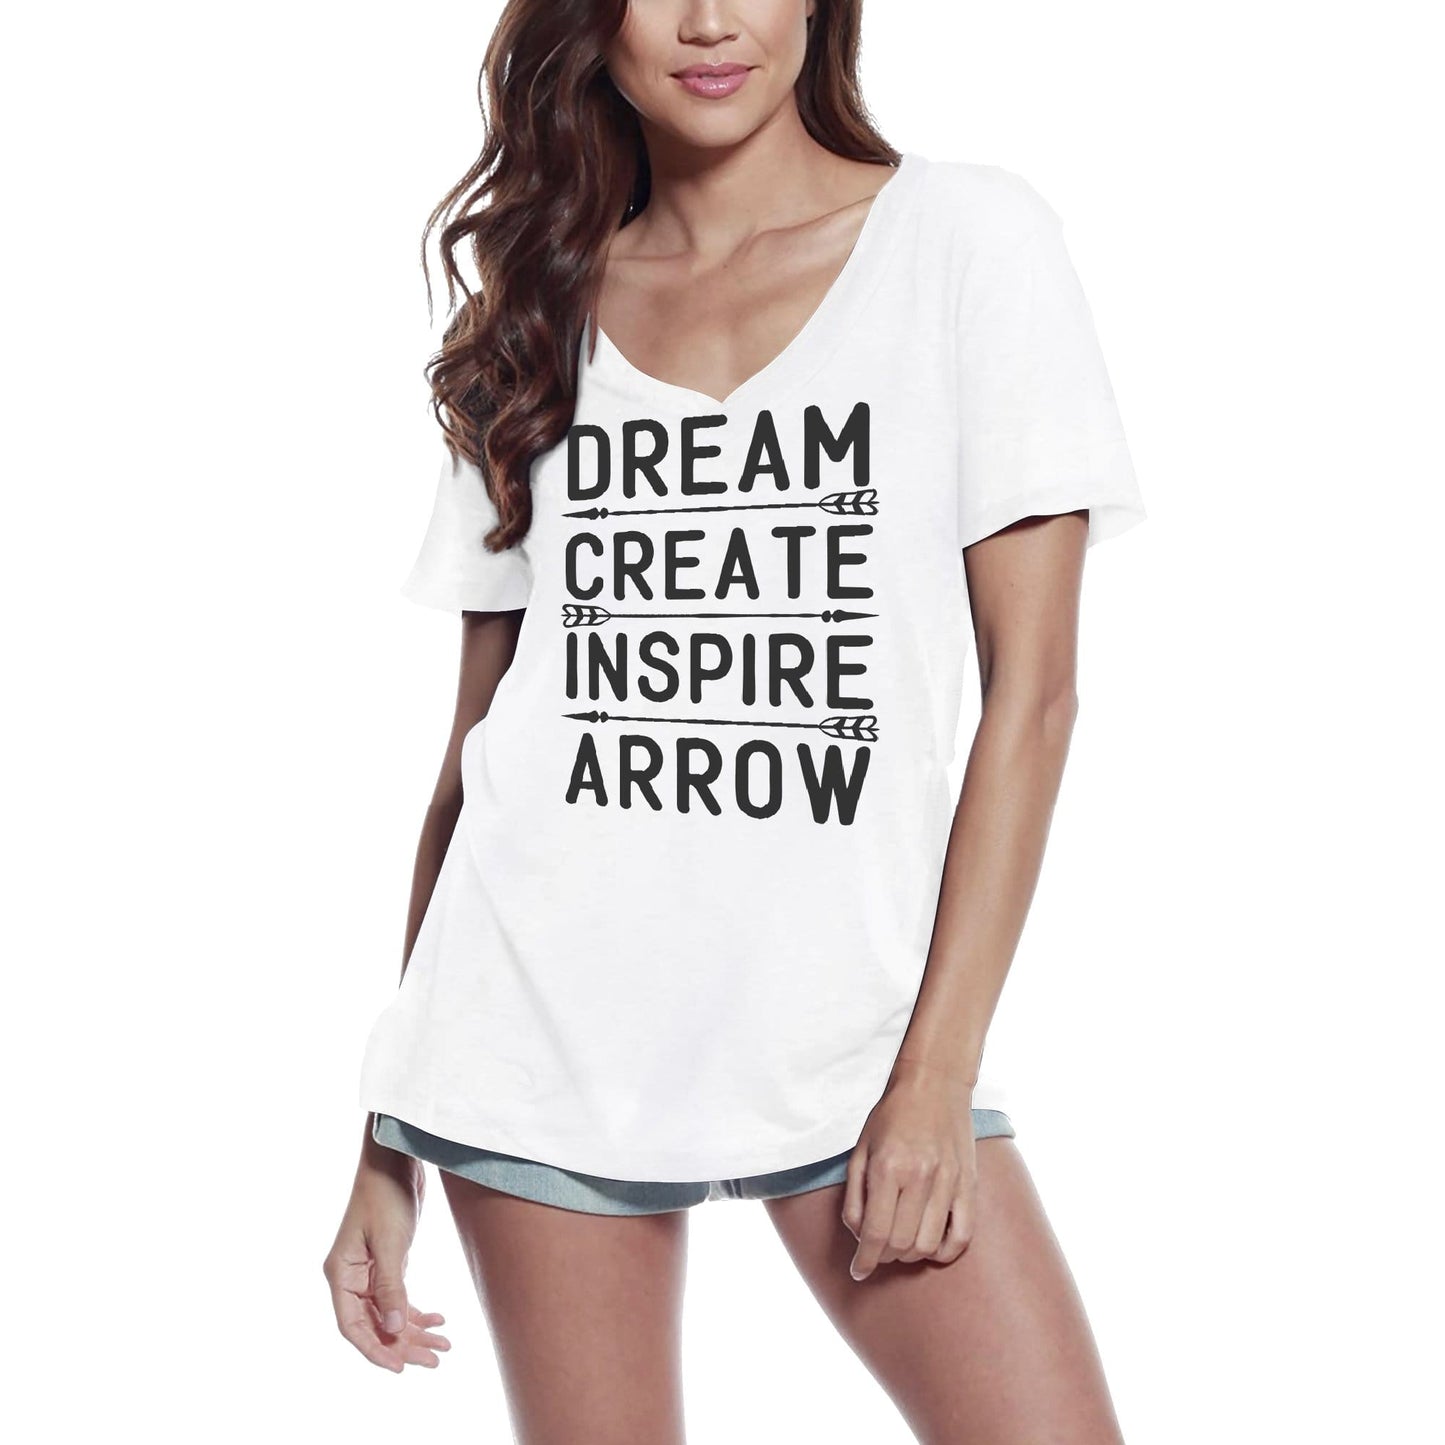 ULTRABASIC Women's T-Shirt Dream Create Inspire Arrow - Short Sleeve Tee Shirt Tops